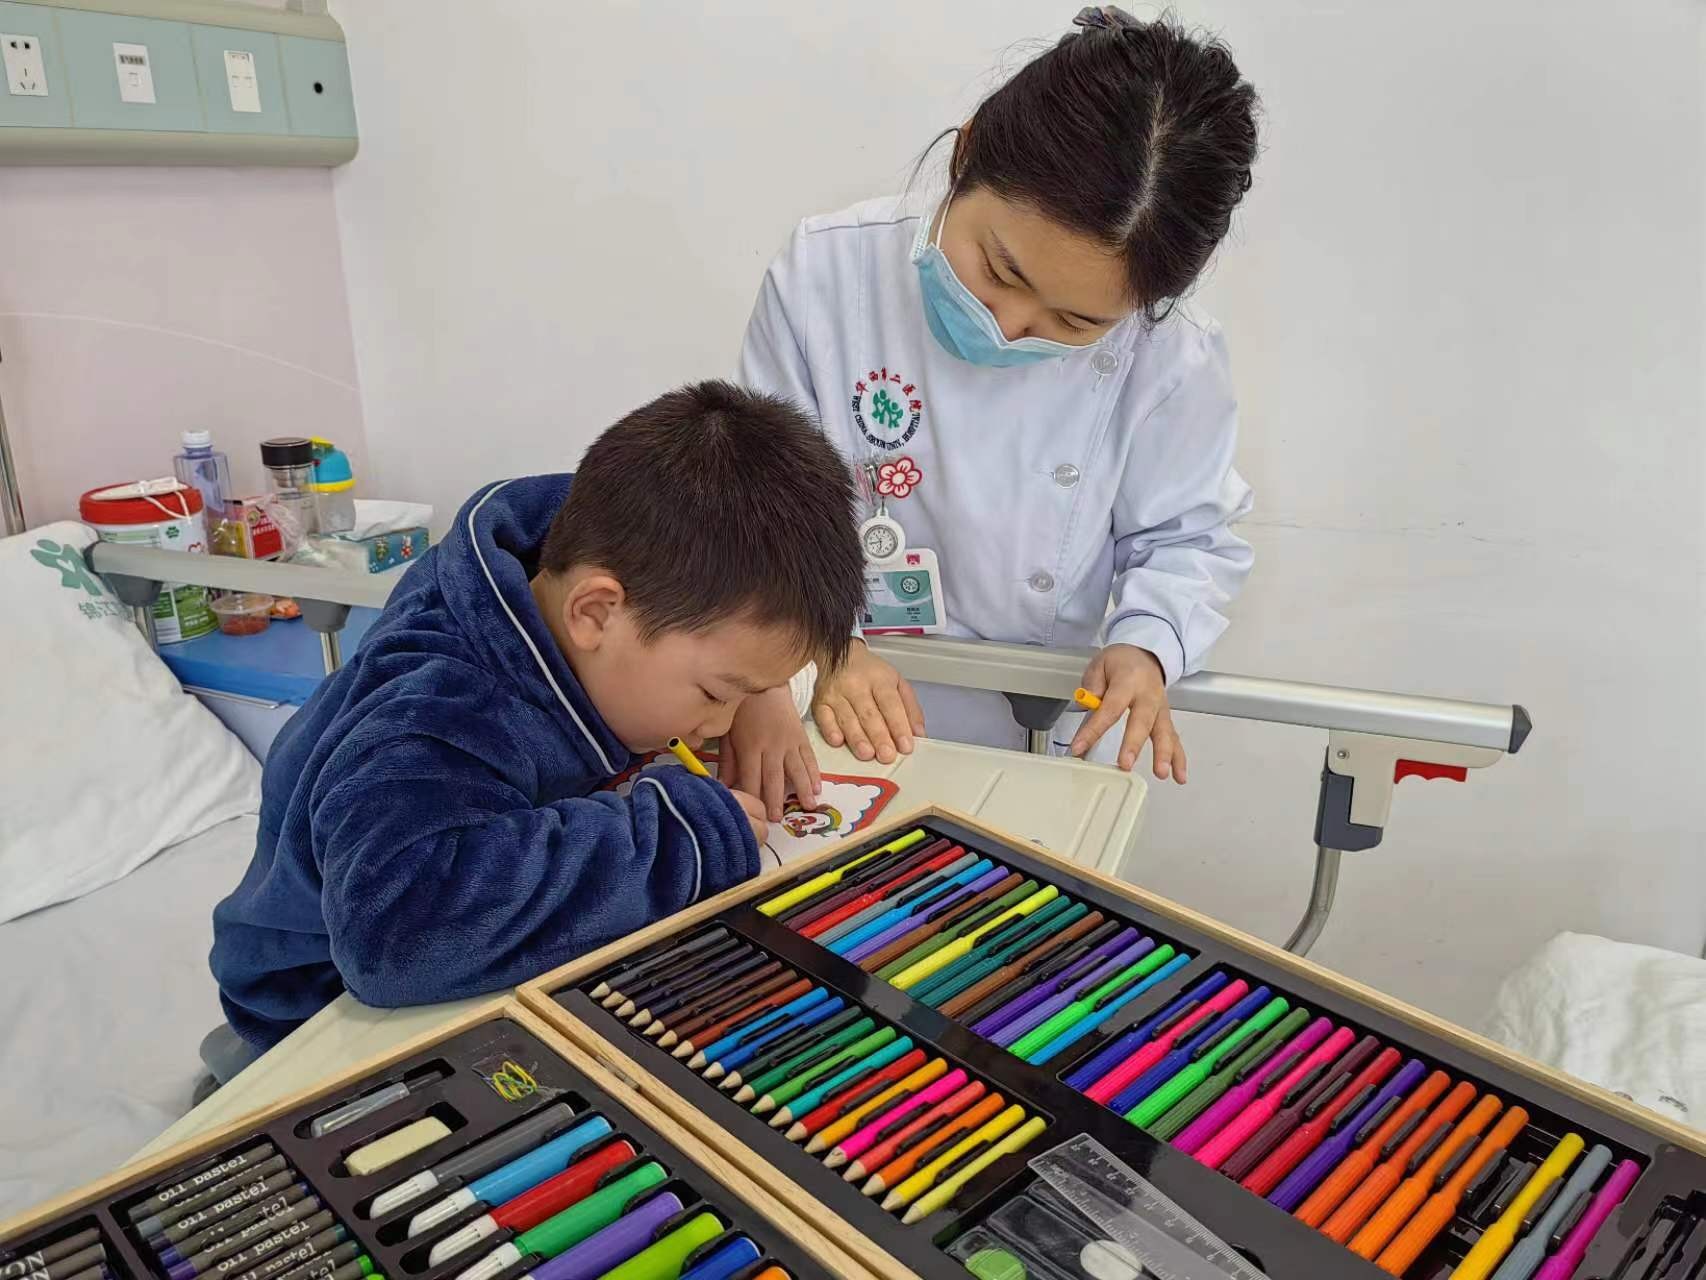 小儿外科组织开展儿童医疗辅导游戏—“谁是木头人”、“画笔接龙”